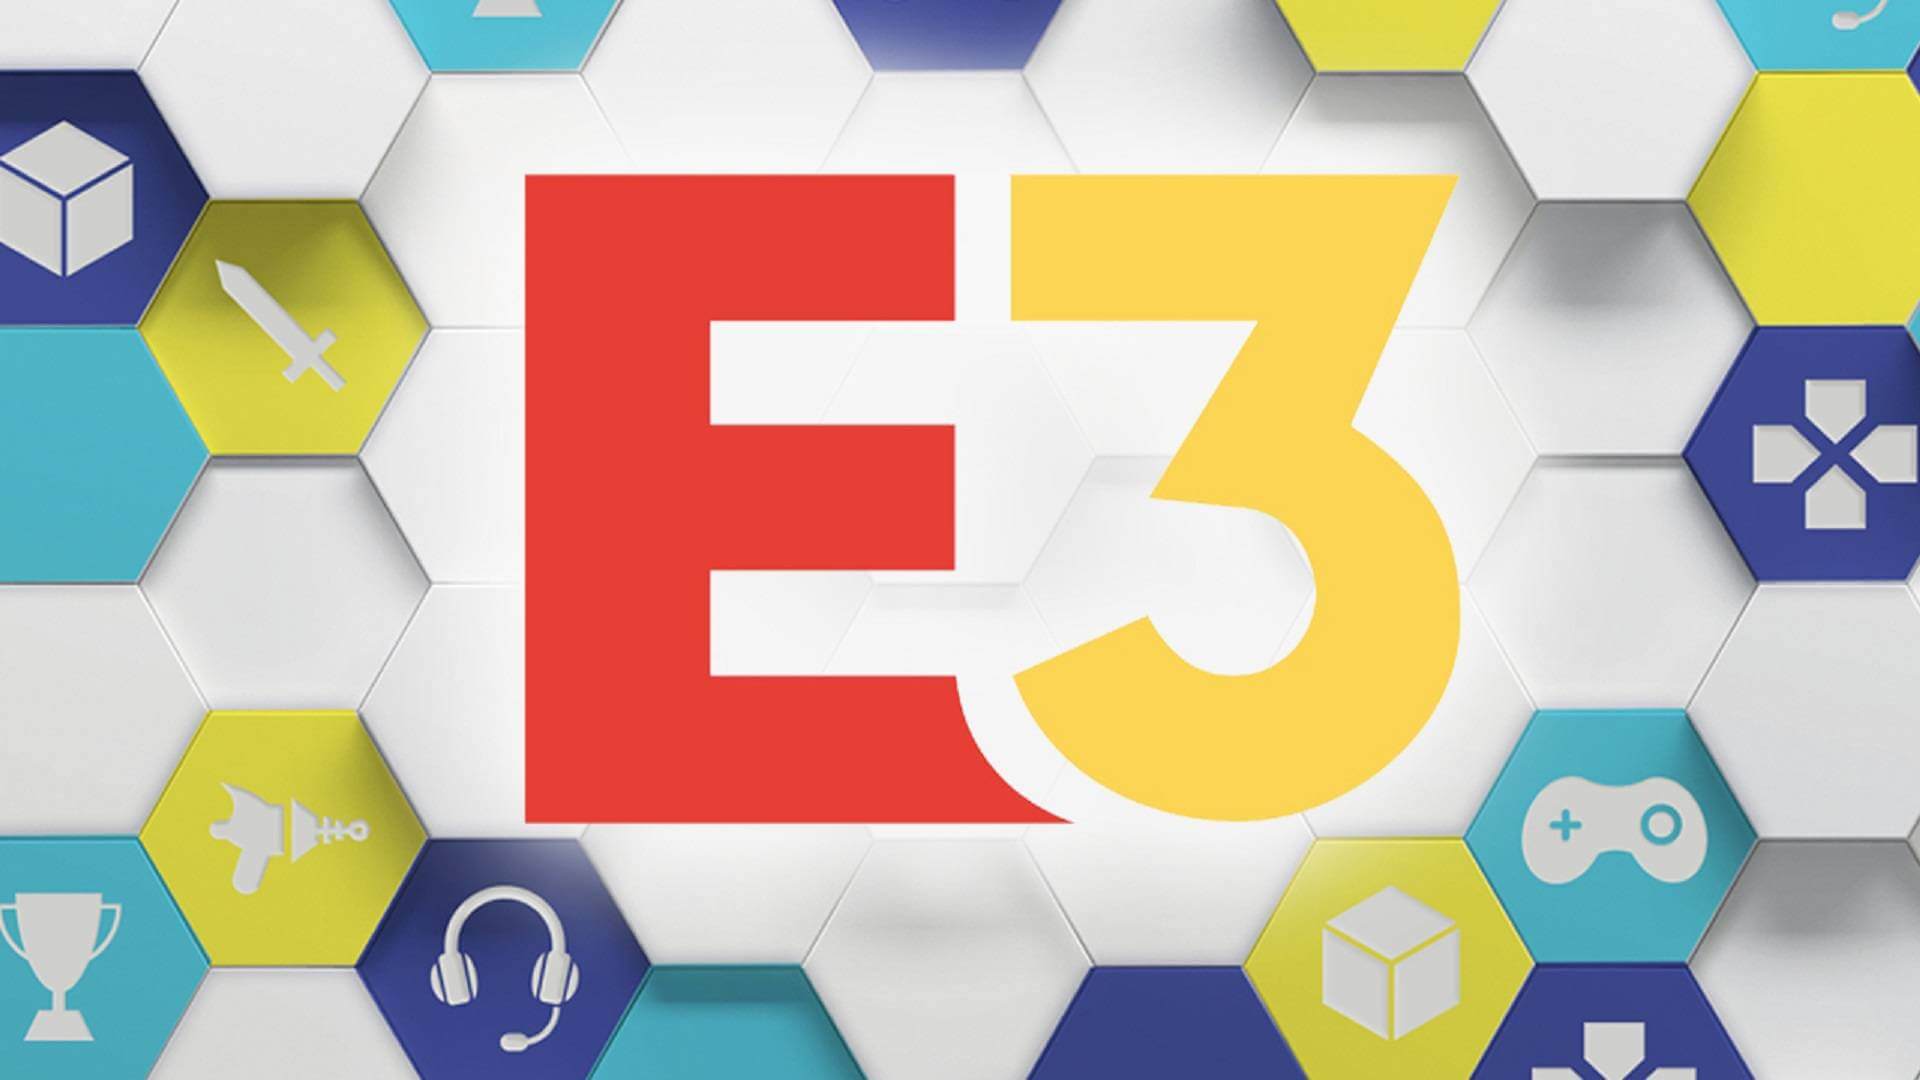 3.3 2021. E3 2021. Е3. Выставка е3. E3 логотип.